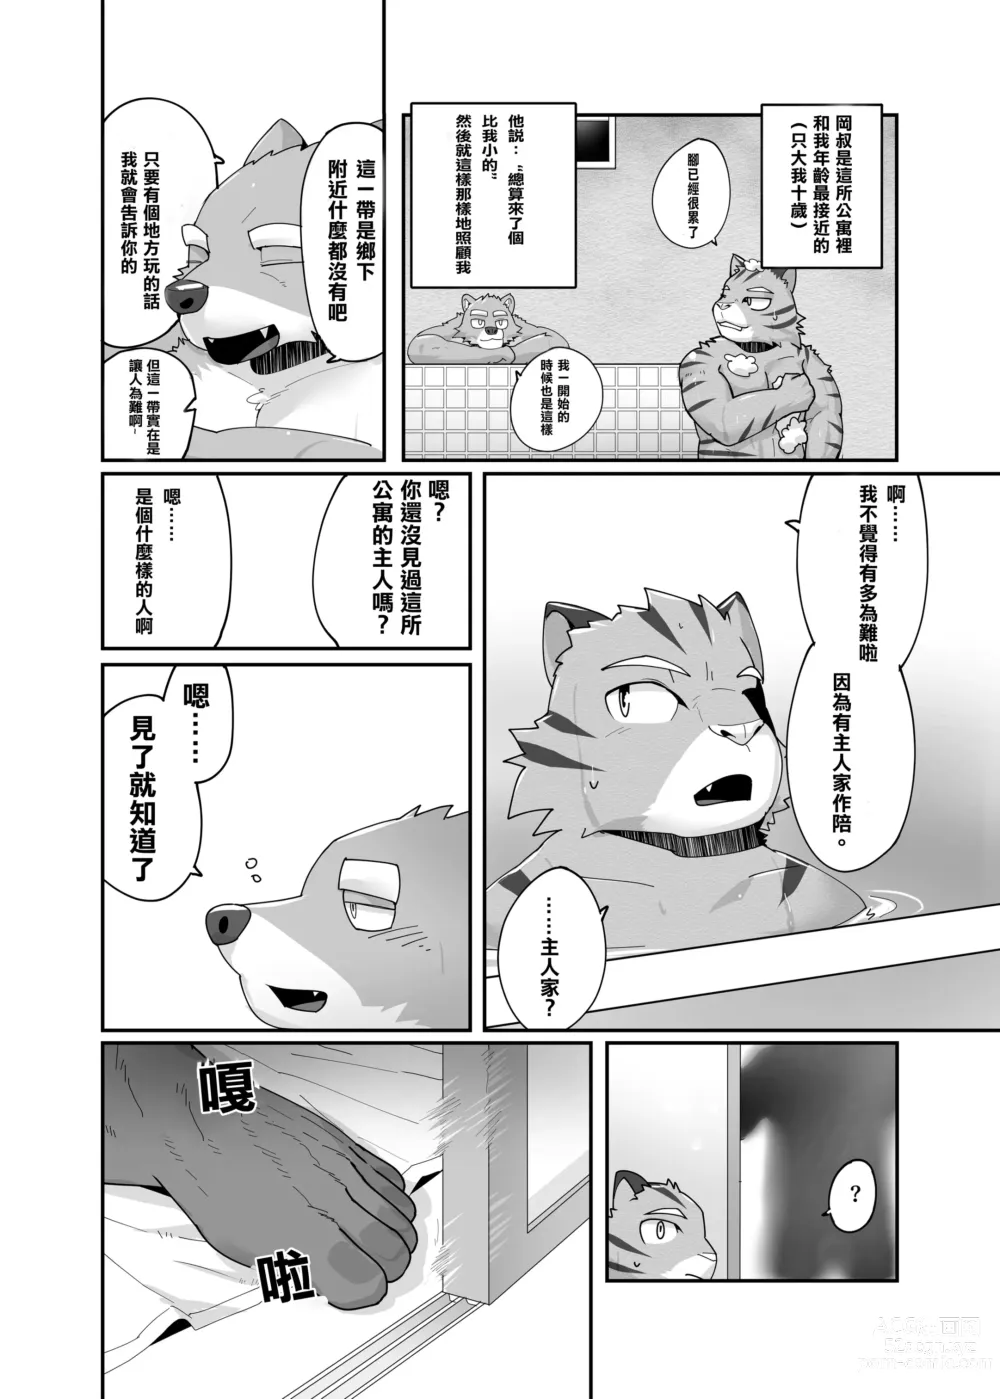 Page 8 of doujinshi 老式單身公寓中有位統御雄性們的主